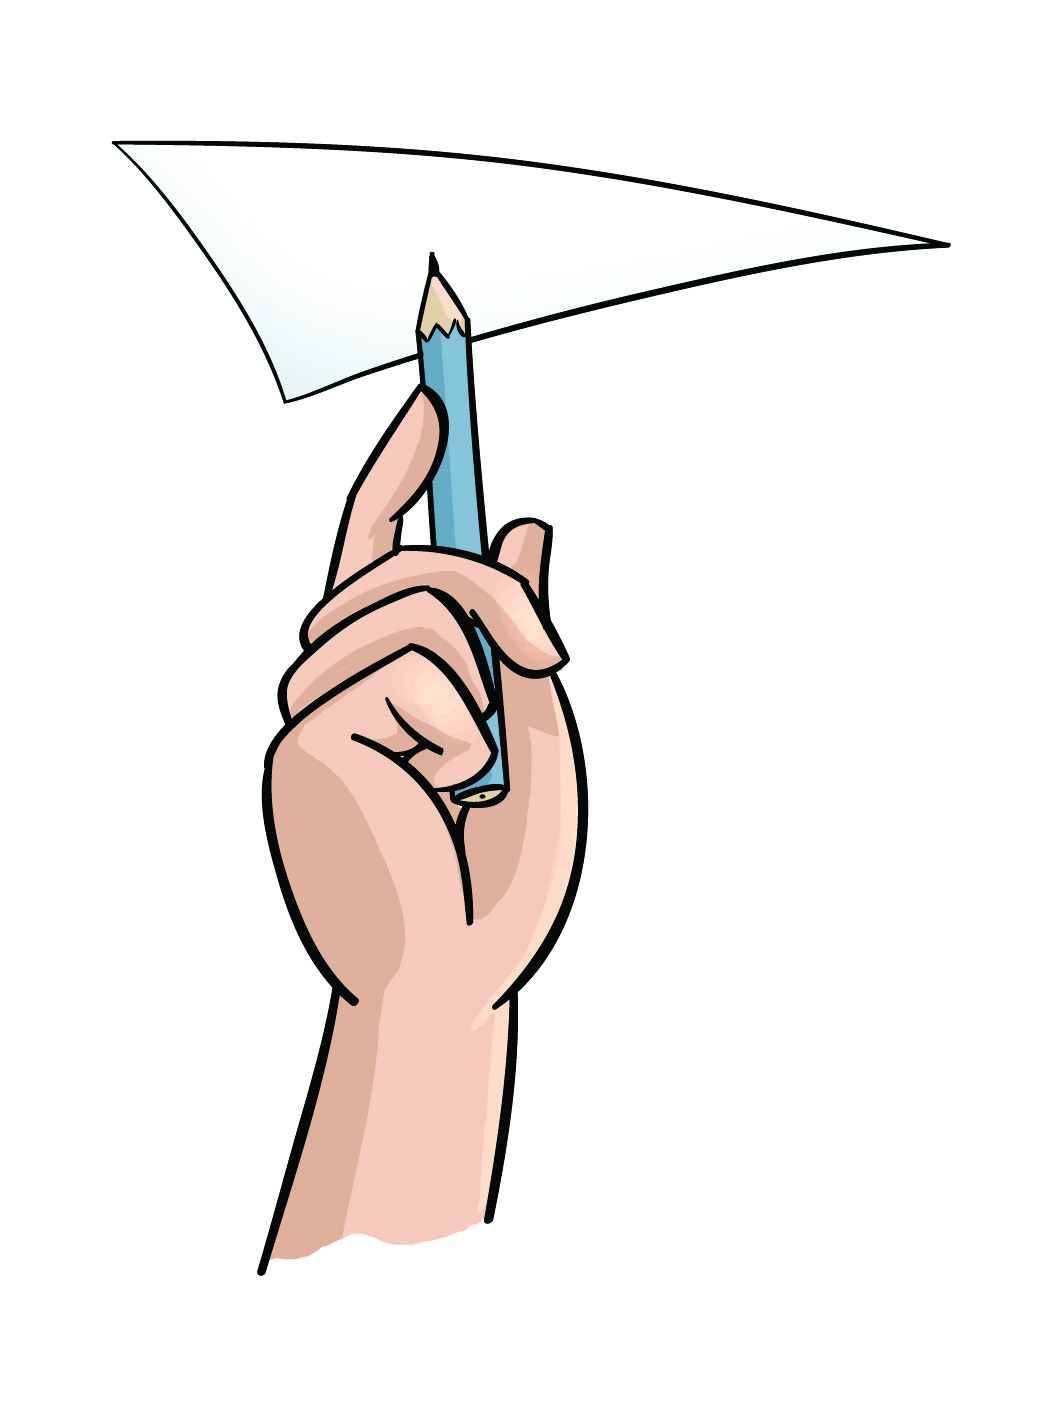 Ilustração. Mão de uma pessoa segurando um lápis com a ponta para cima. Um triângulo feito de cartolina está apoiado no lápis de maneira equilibrada.